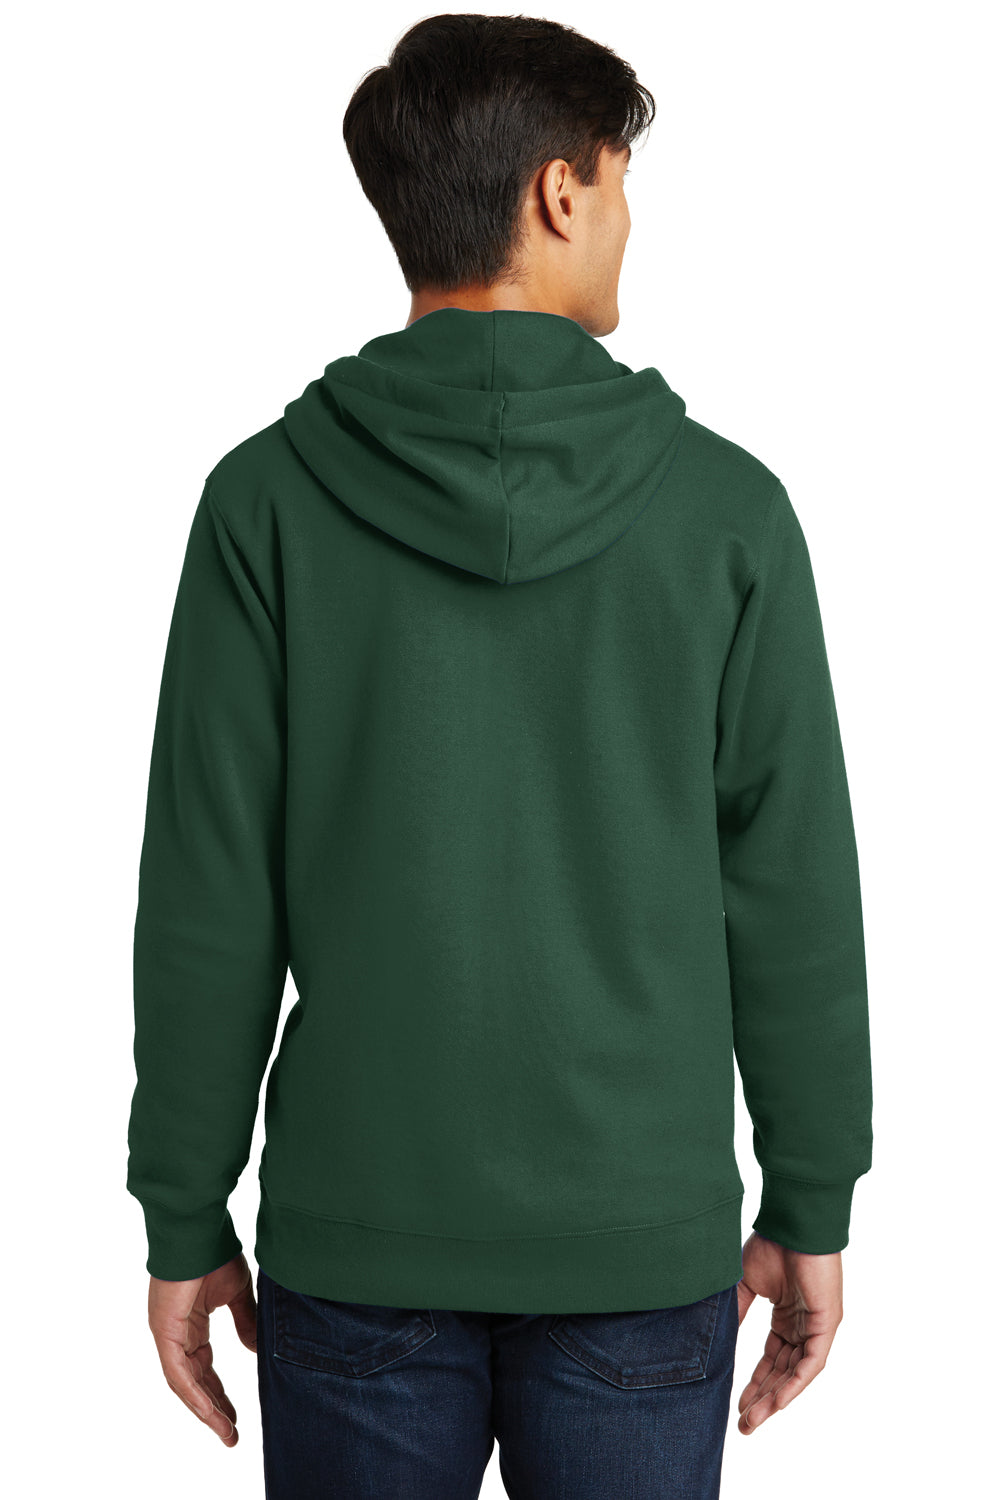 Port & Company PC850ZH Mens Fan Favorite Fleece Full Zip Hooded Sweatshirt Hoodie Forest Green Back